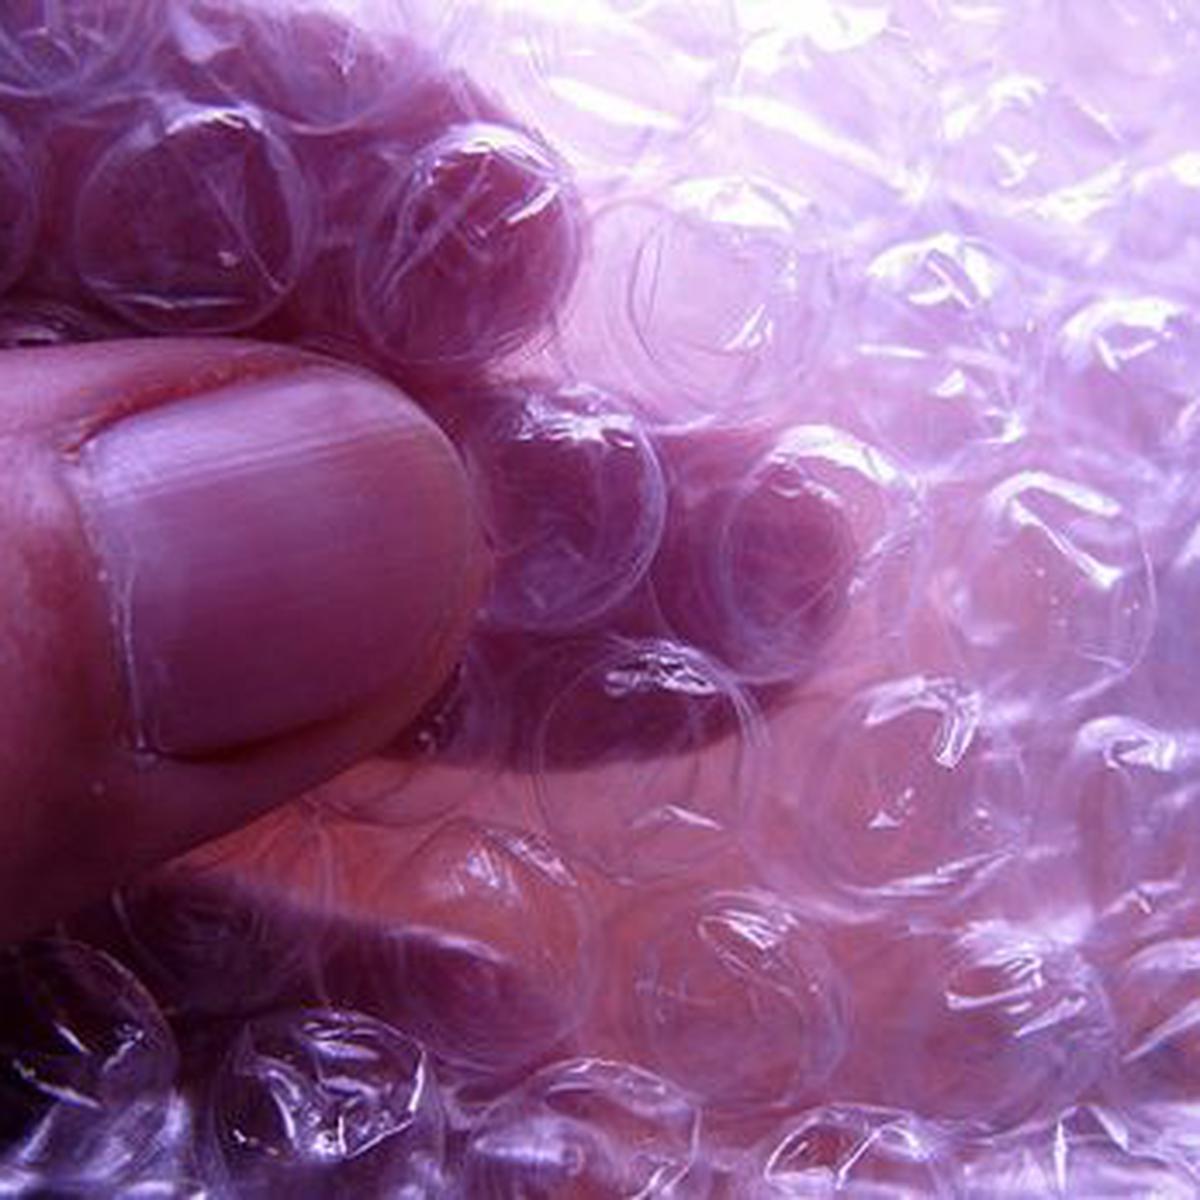 Ya no se podrán explotar las burbujas del plástico de embalaje